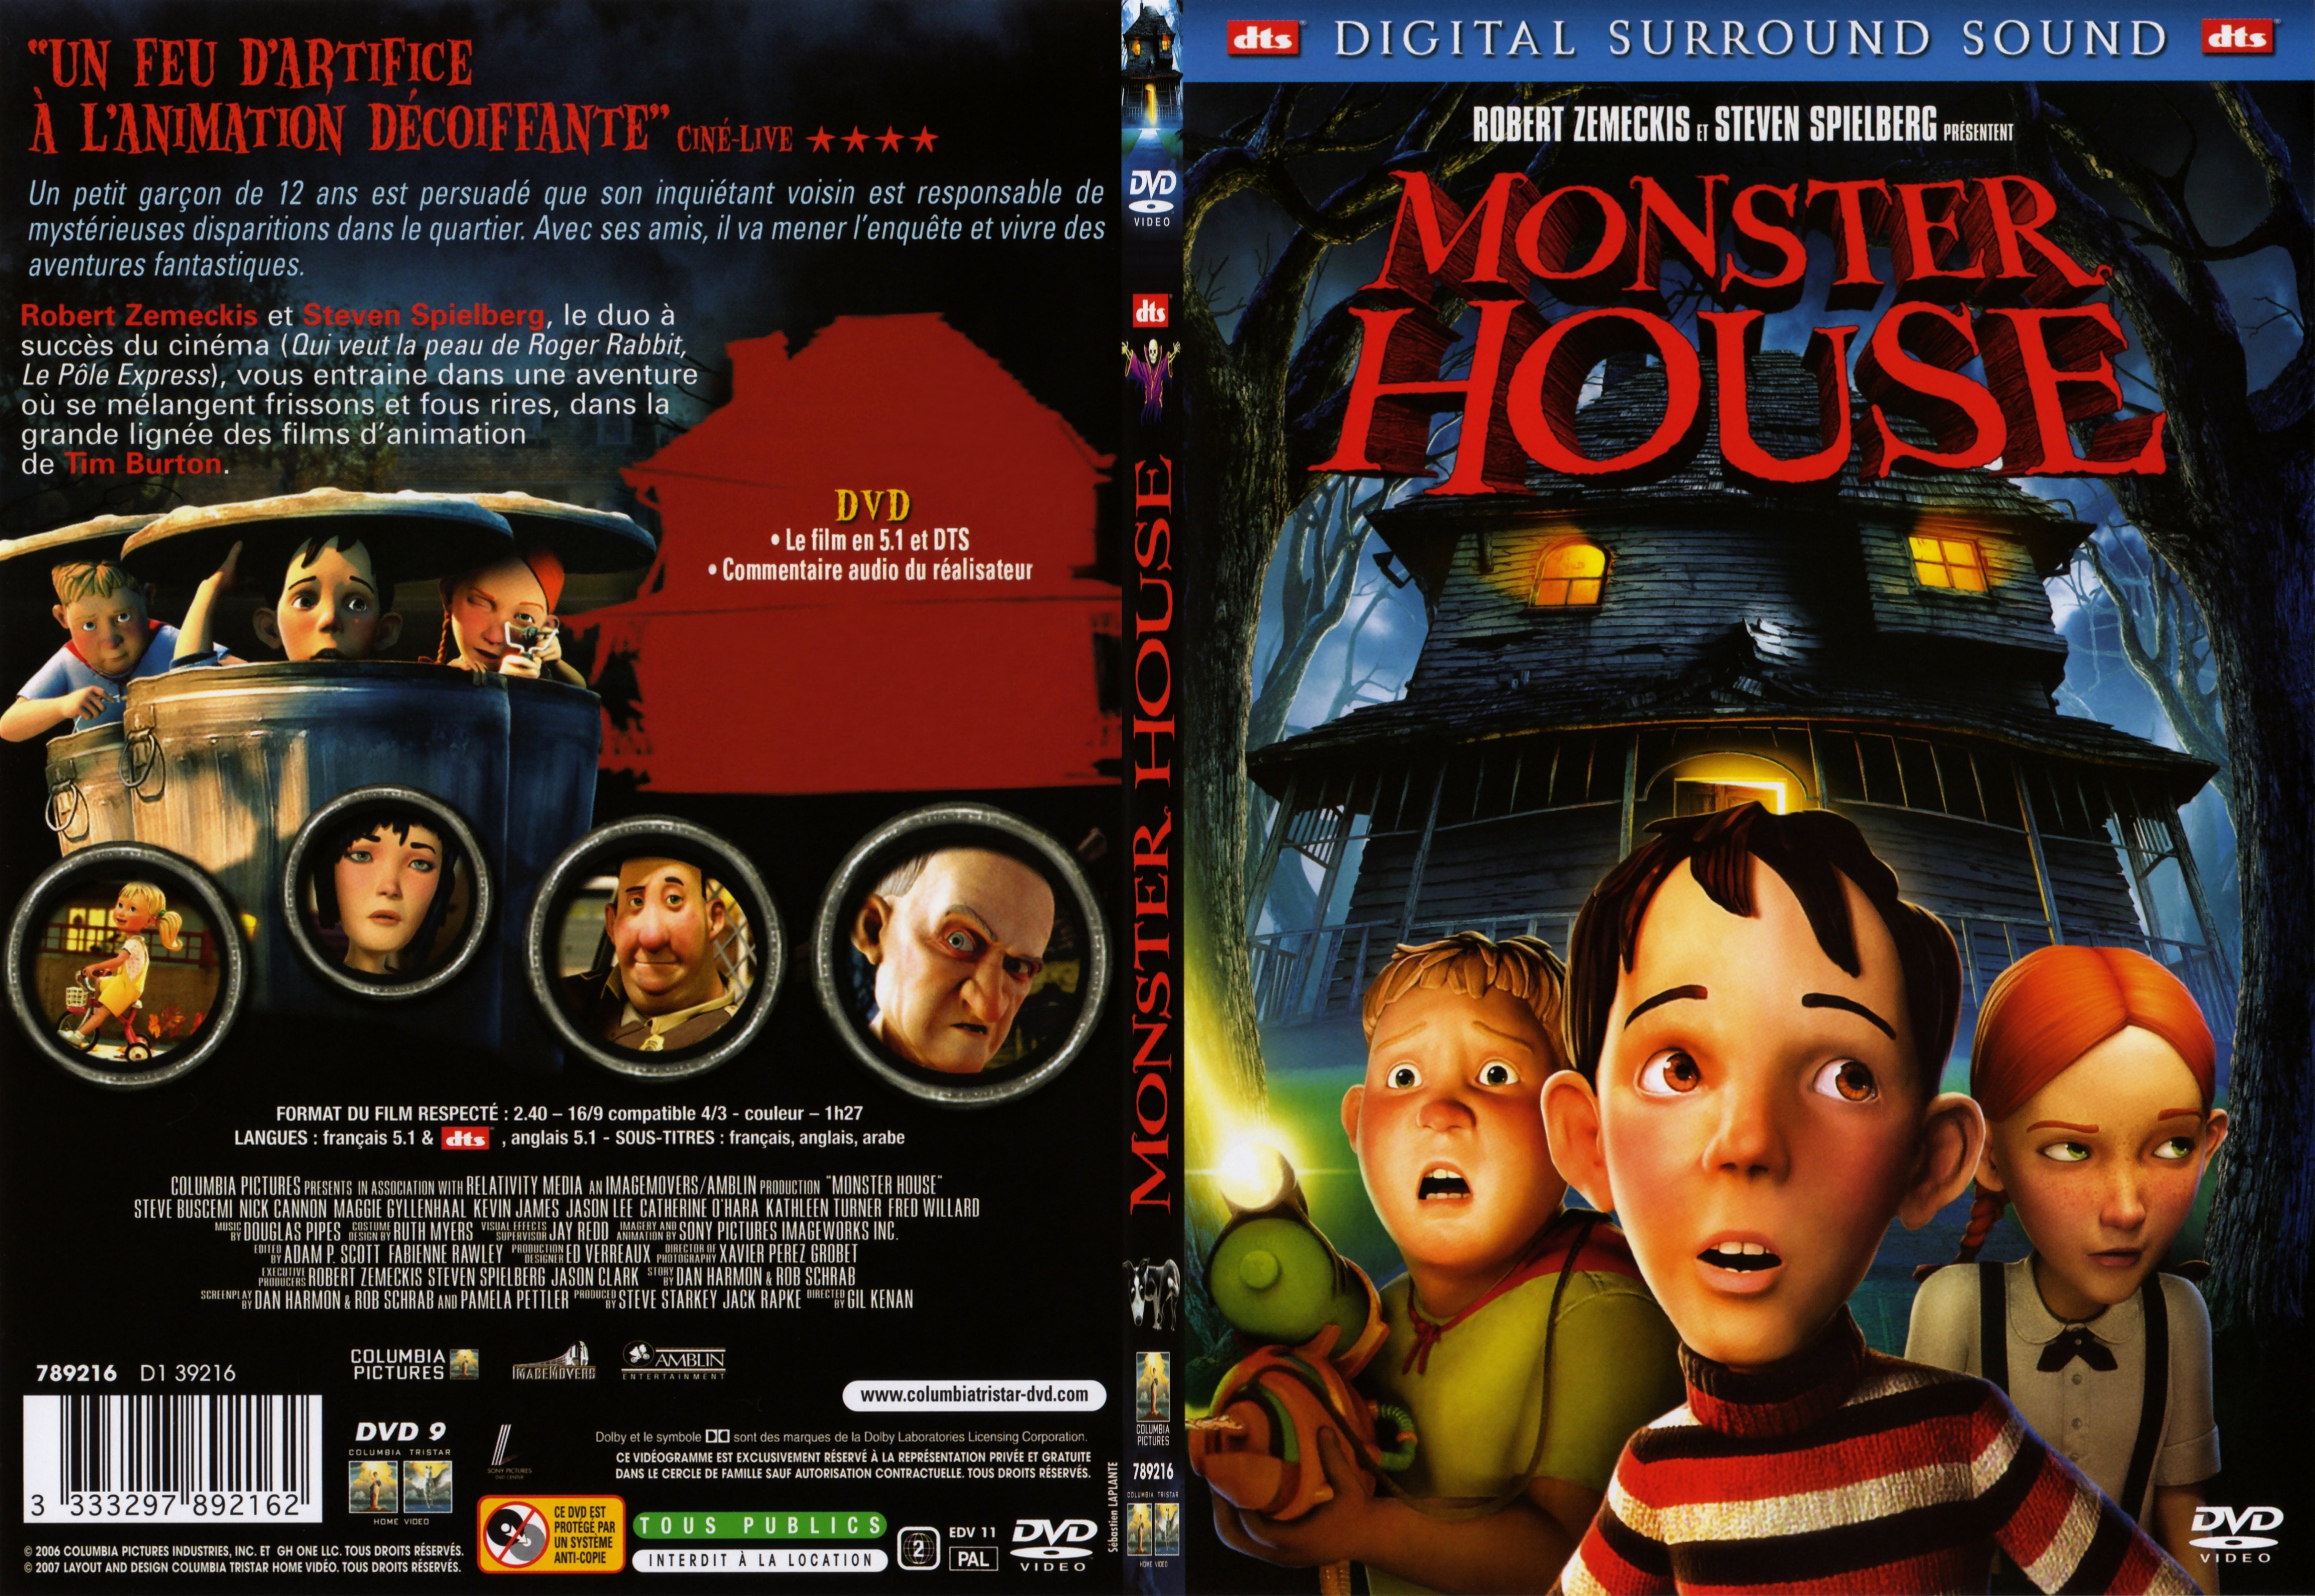 Jaquette DVD Monster house - SLIM v2